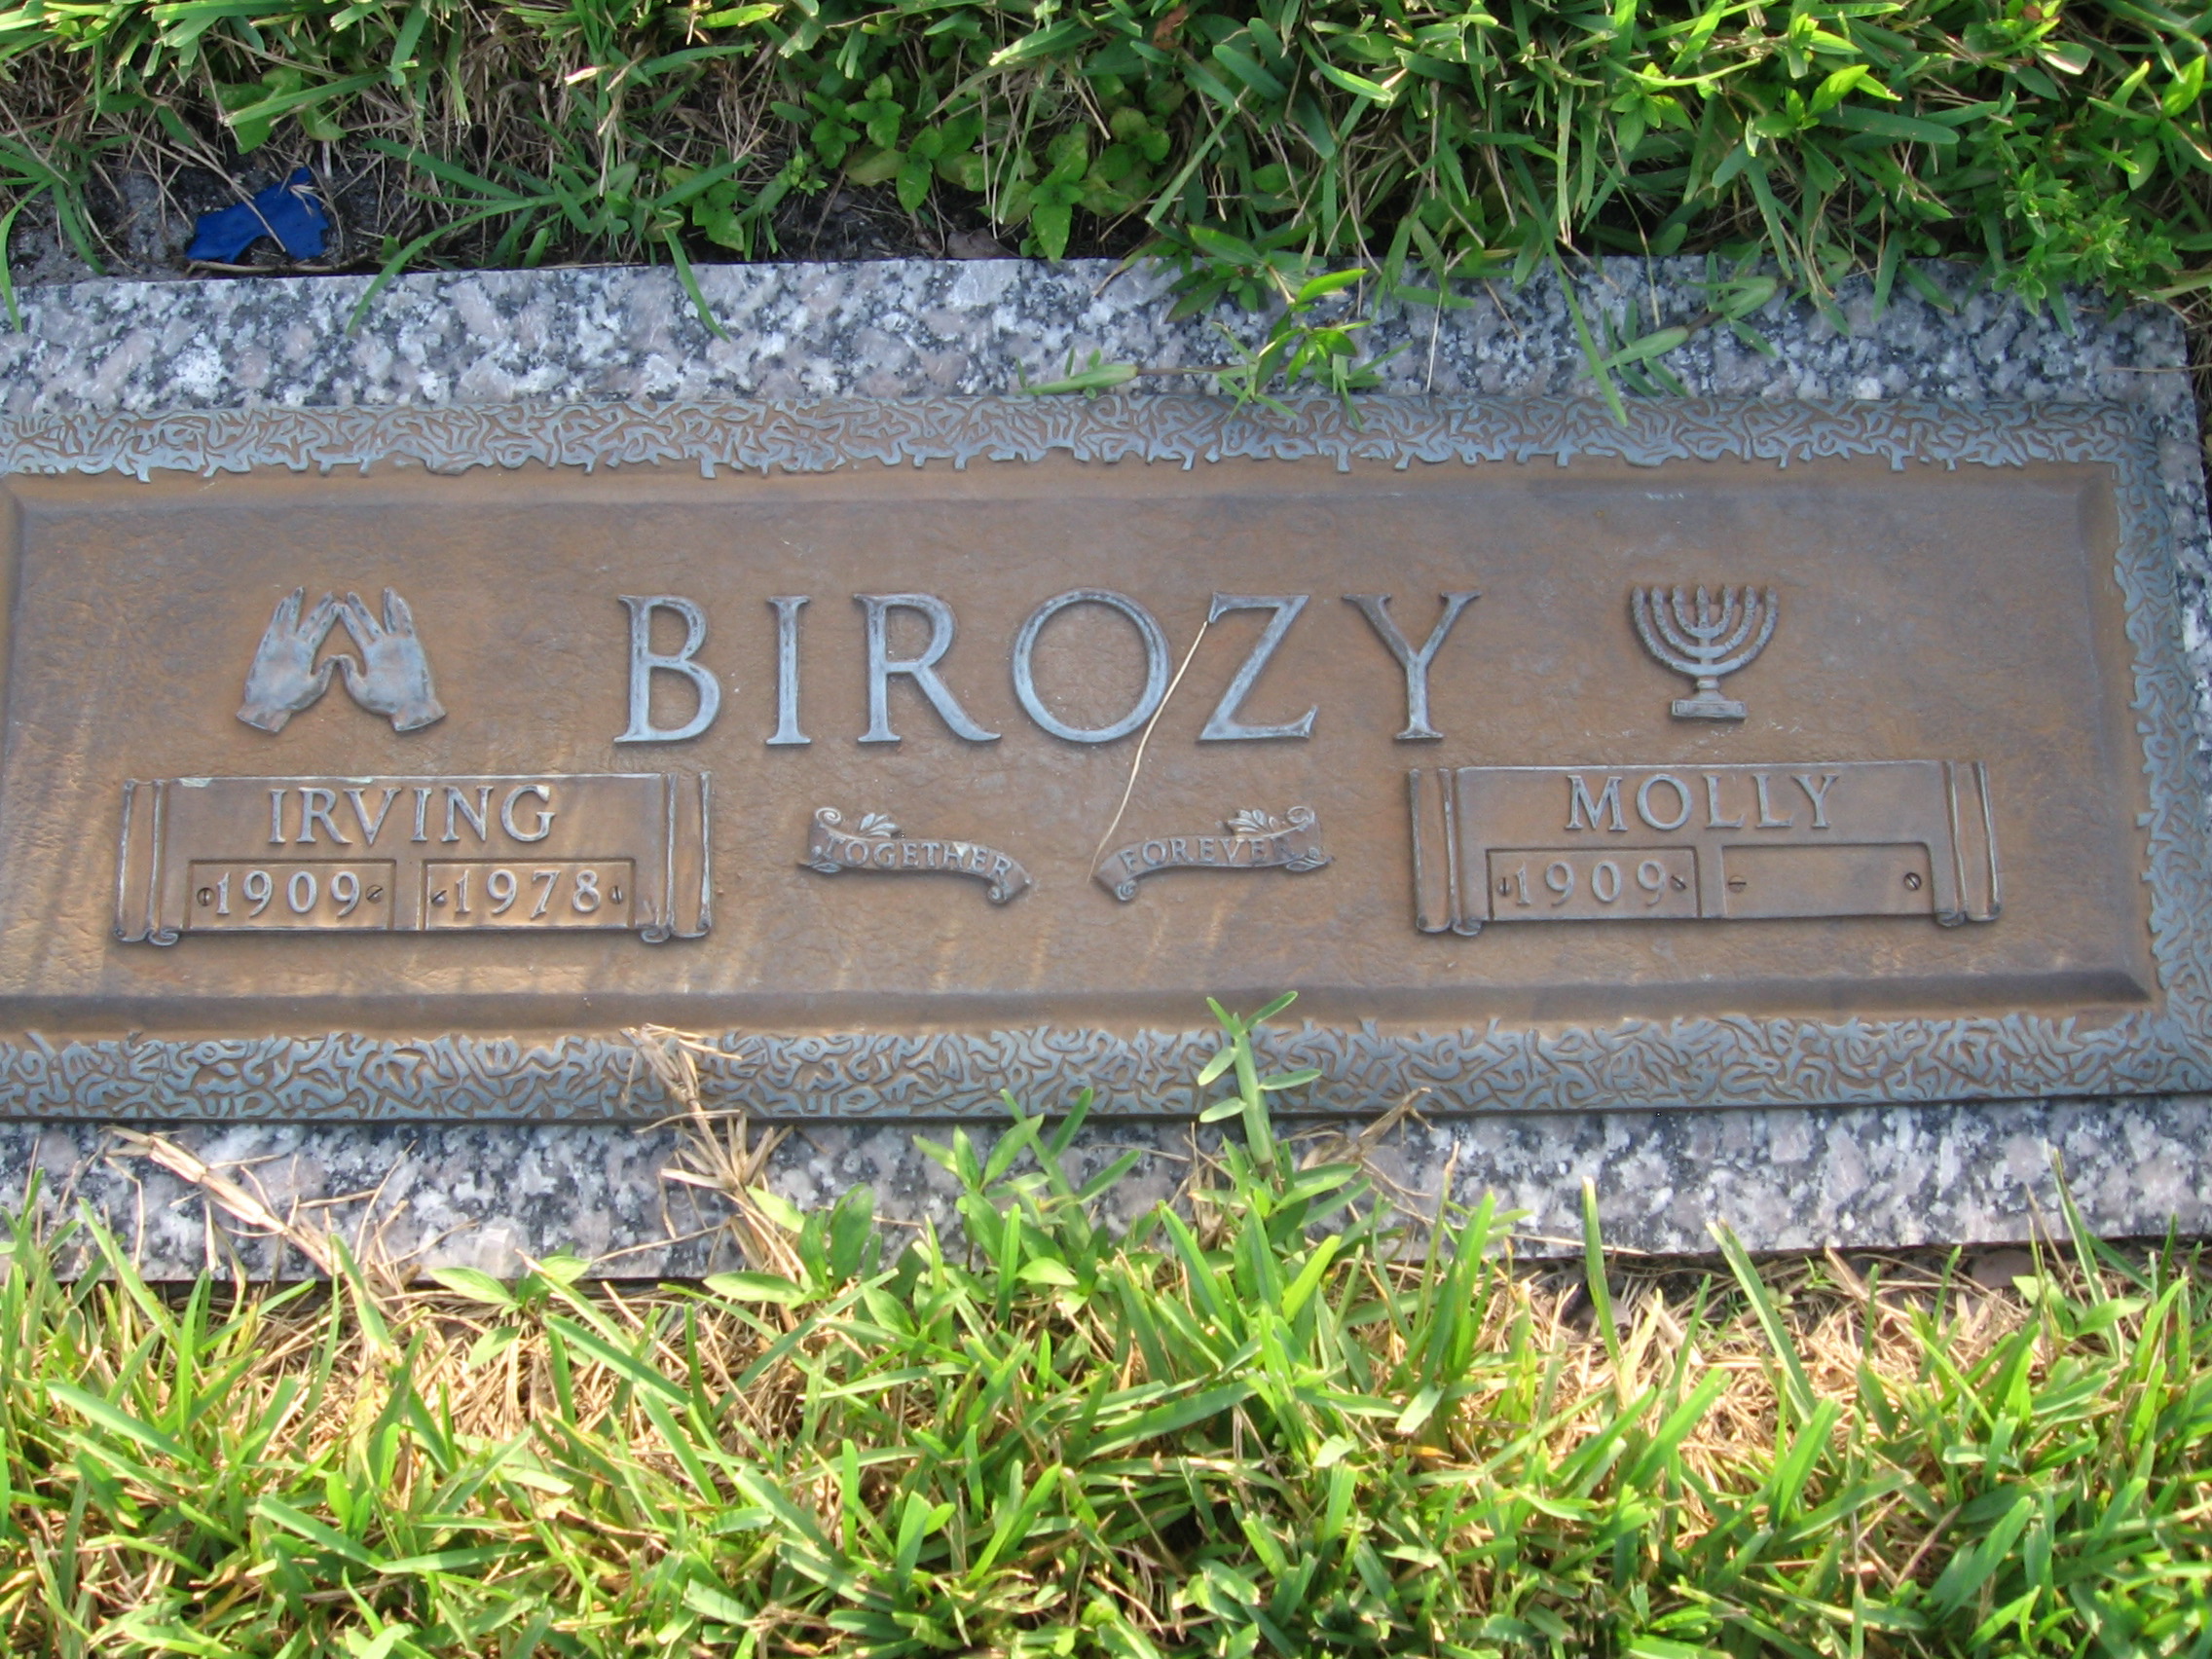 Molly Birozy